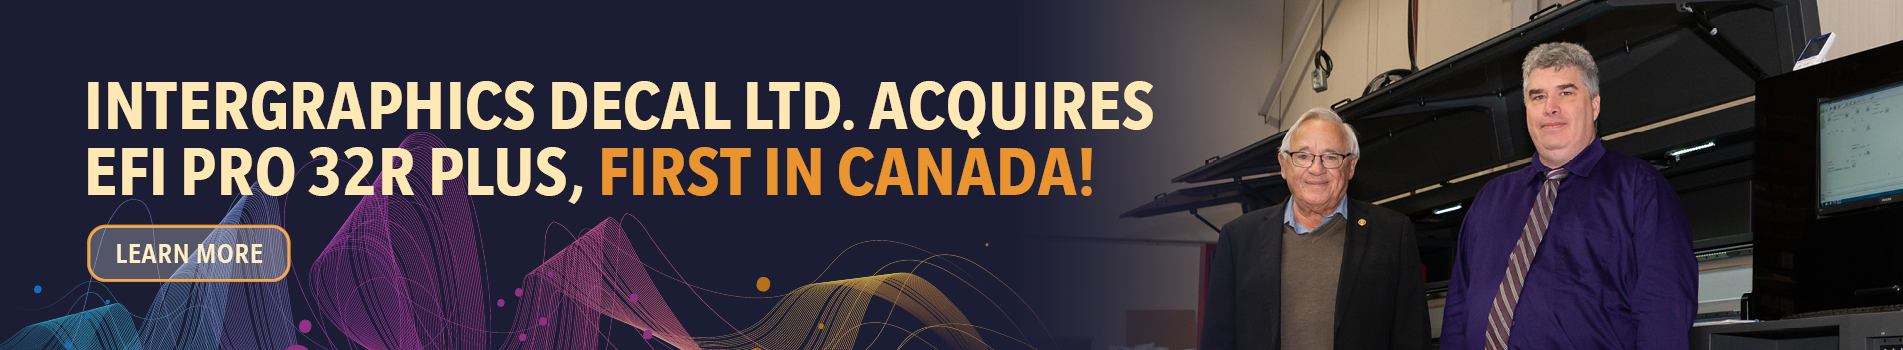 Intergraphics Decal Ltd. Acquires EFI 32R Plus, First in Canada